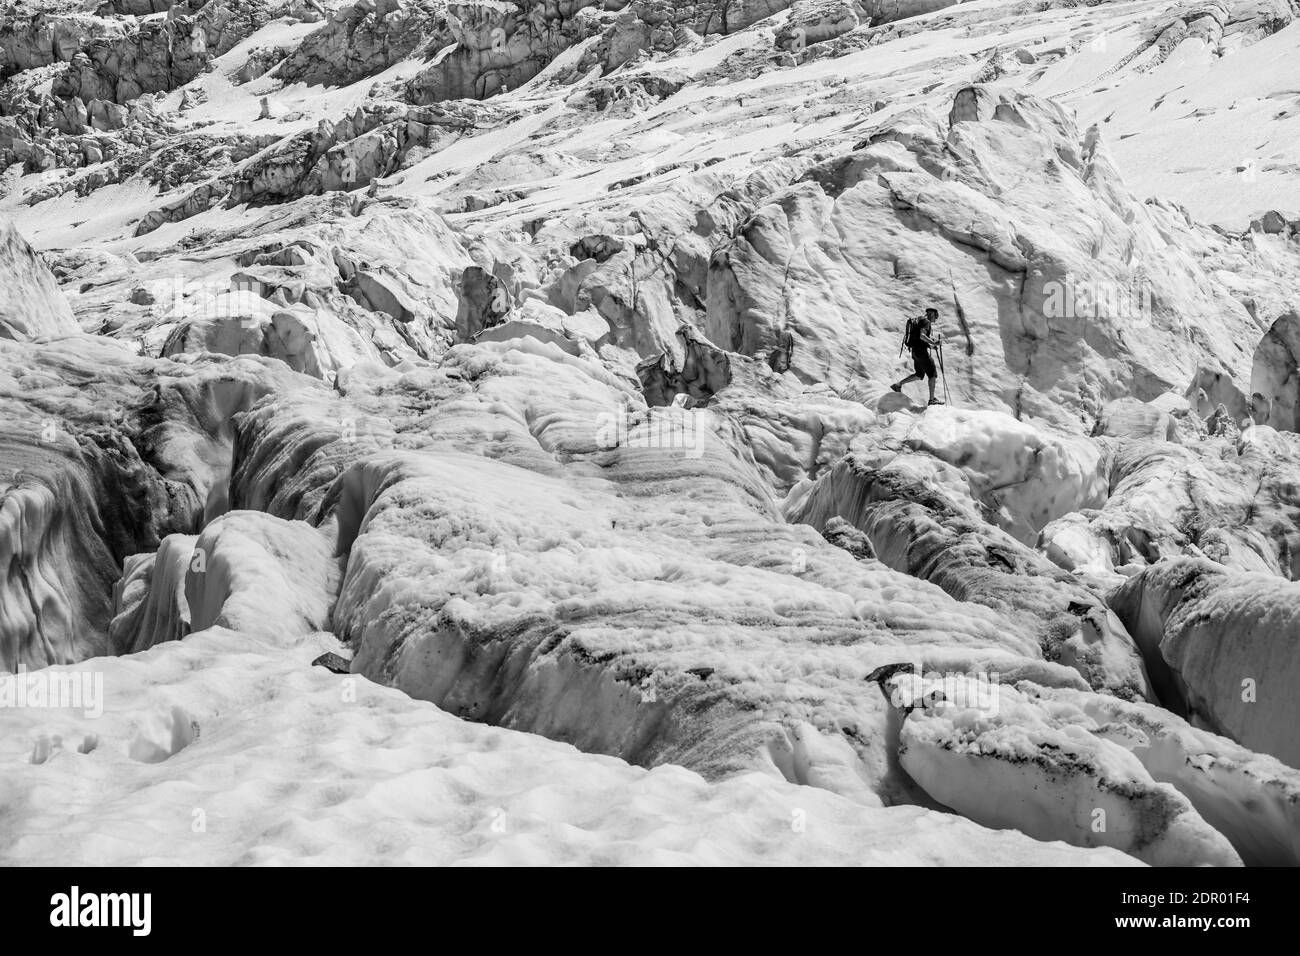 Grimpeur marchant sur un glacier en rade, glace de glacier avec des crevasses, langue de glacier, Glacier des Bossons, la Jonction, Chamonix, haute-Savoie, France Banque D'Images